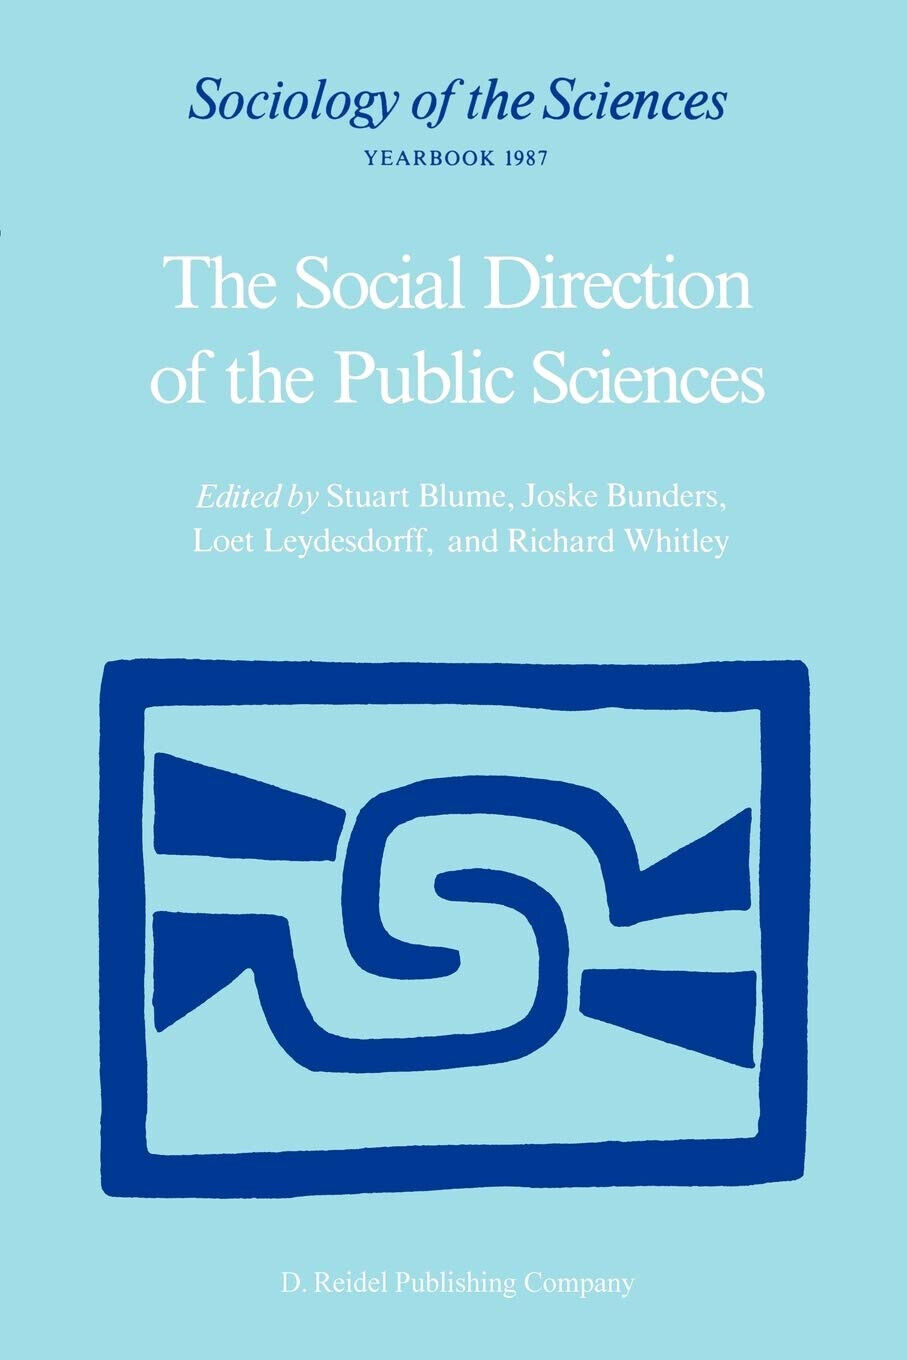 The Social Direction of the Public Sciences - Stuart Blume  - Springer, 1987